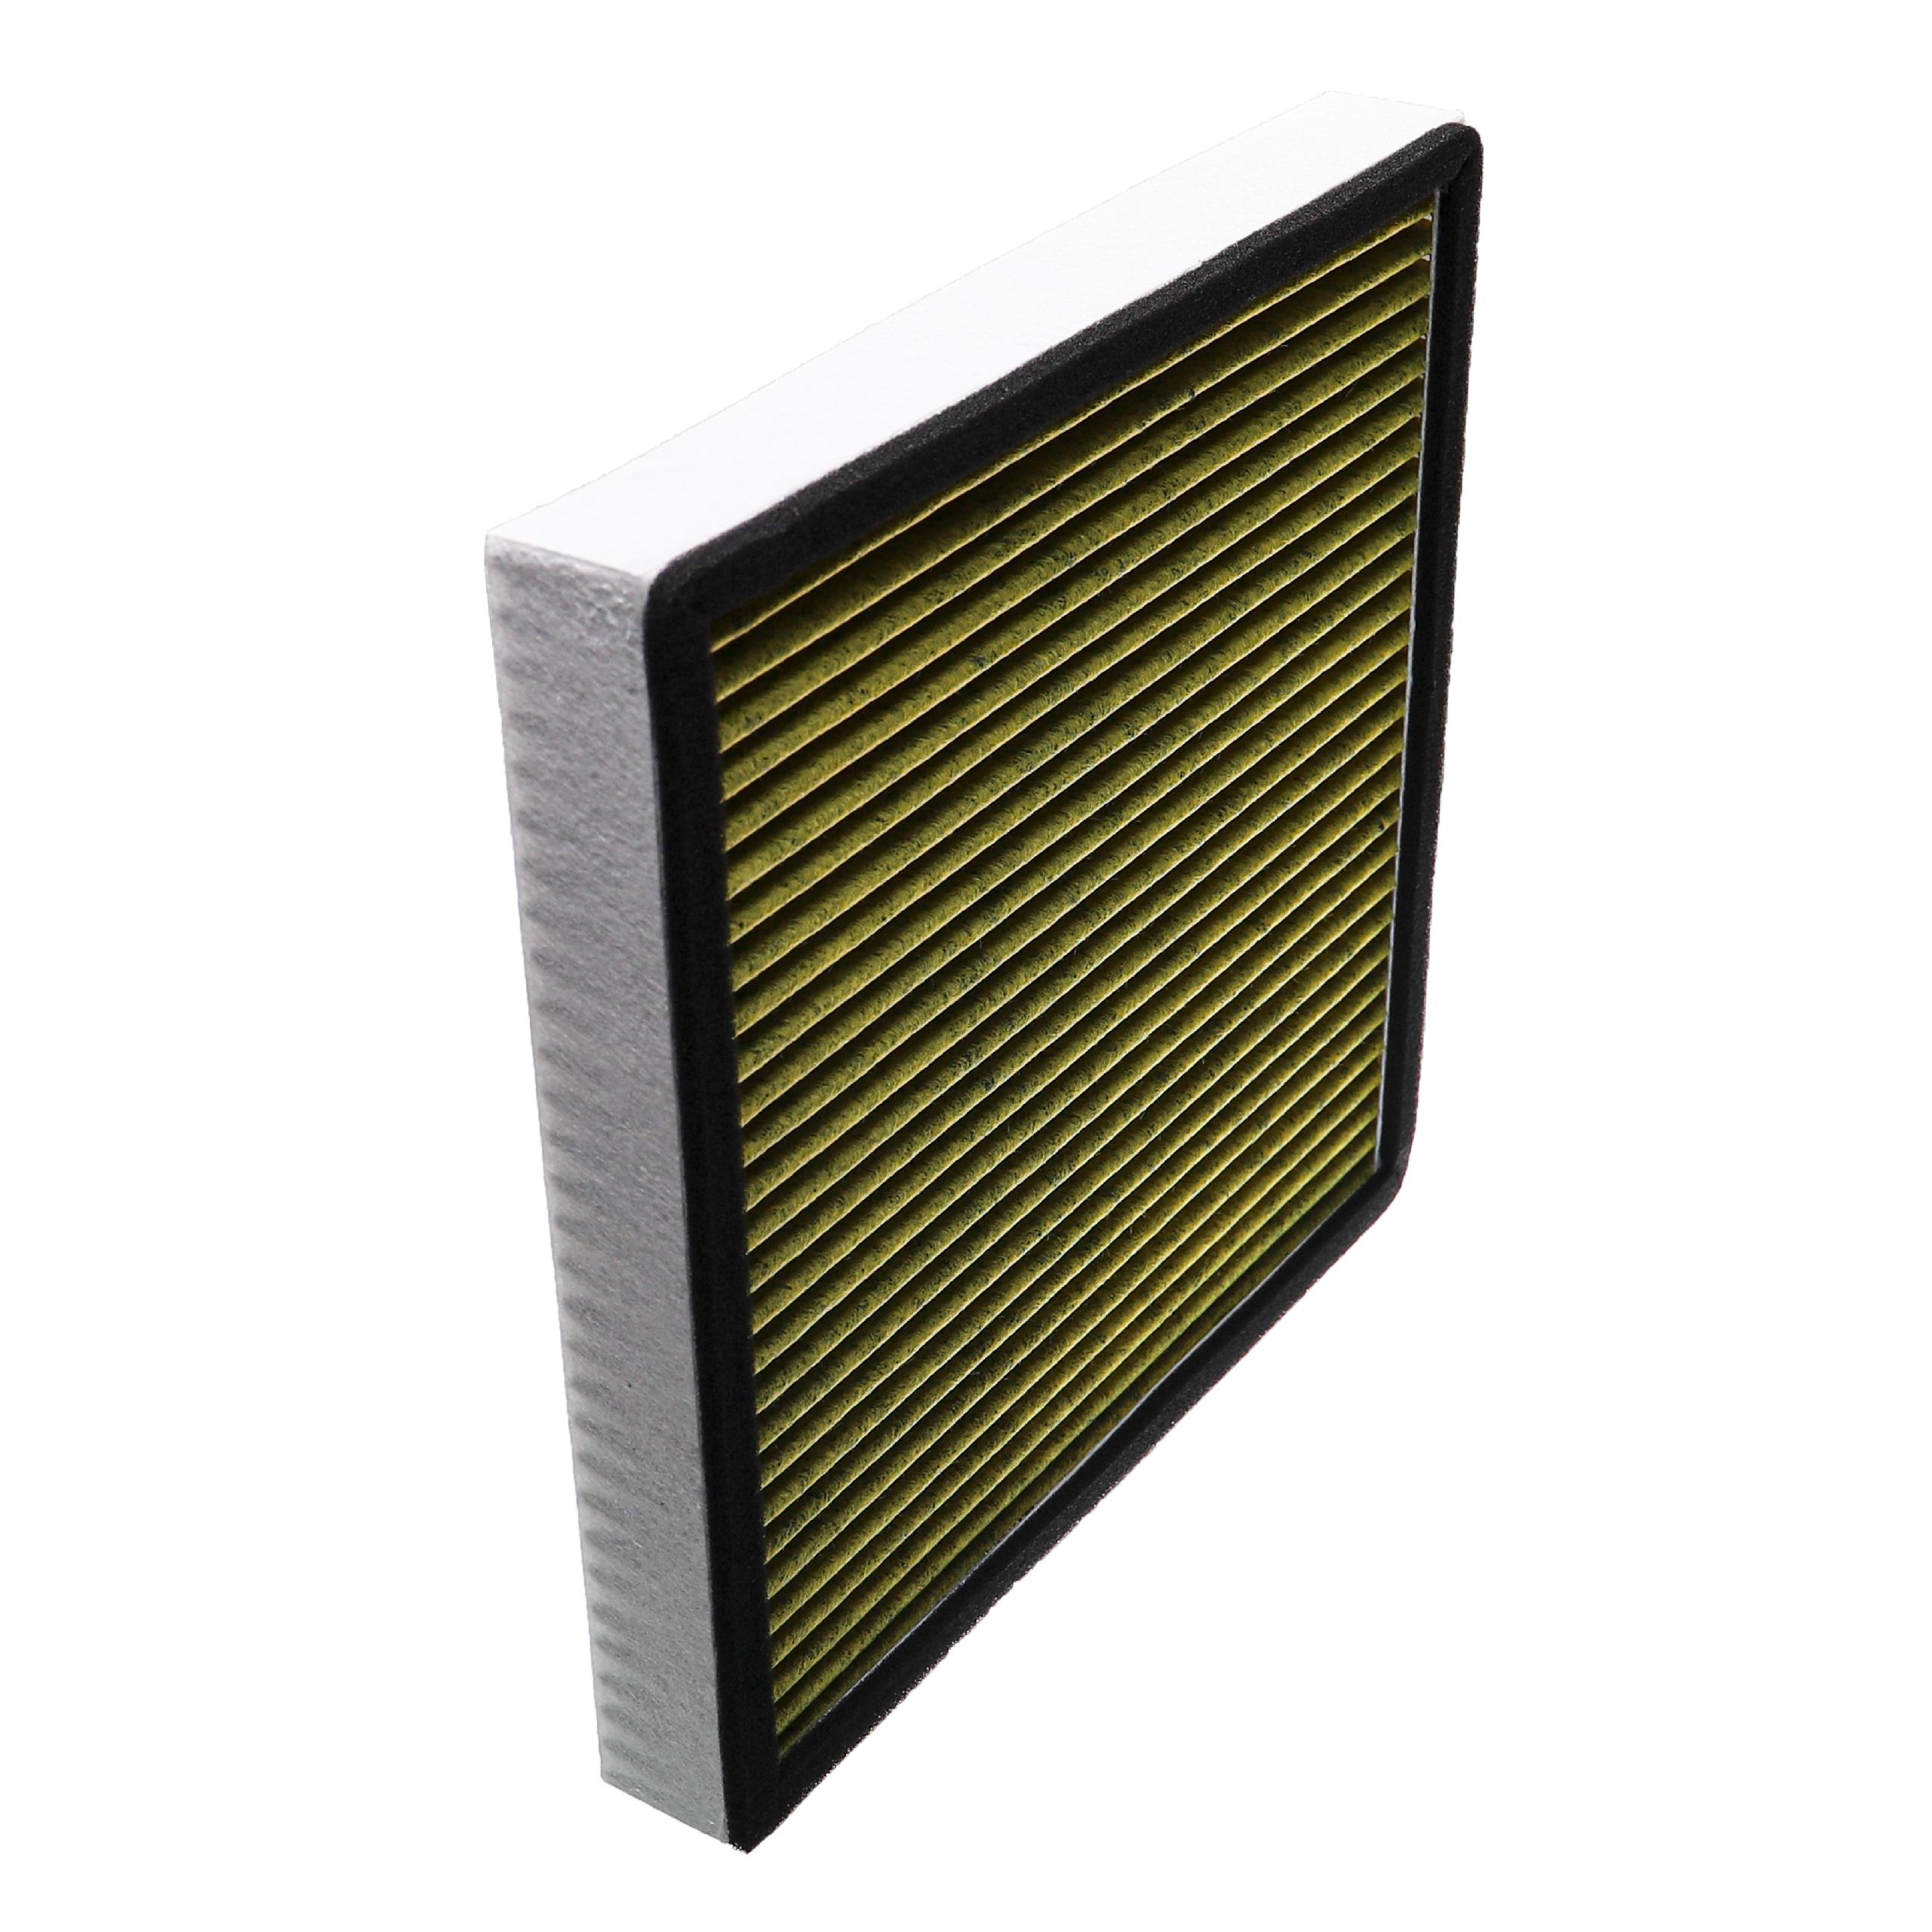 Luftreiniger-Filter als Ersatz für Boneco 46917 - 4-in-1 Filter